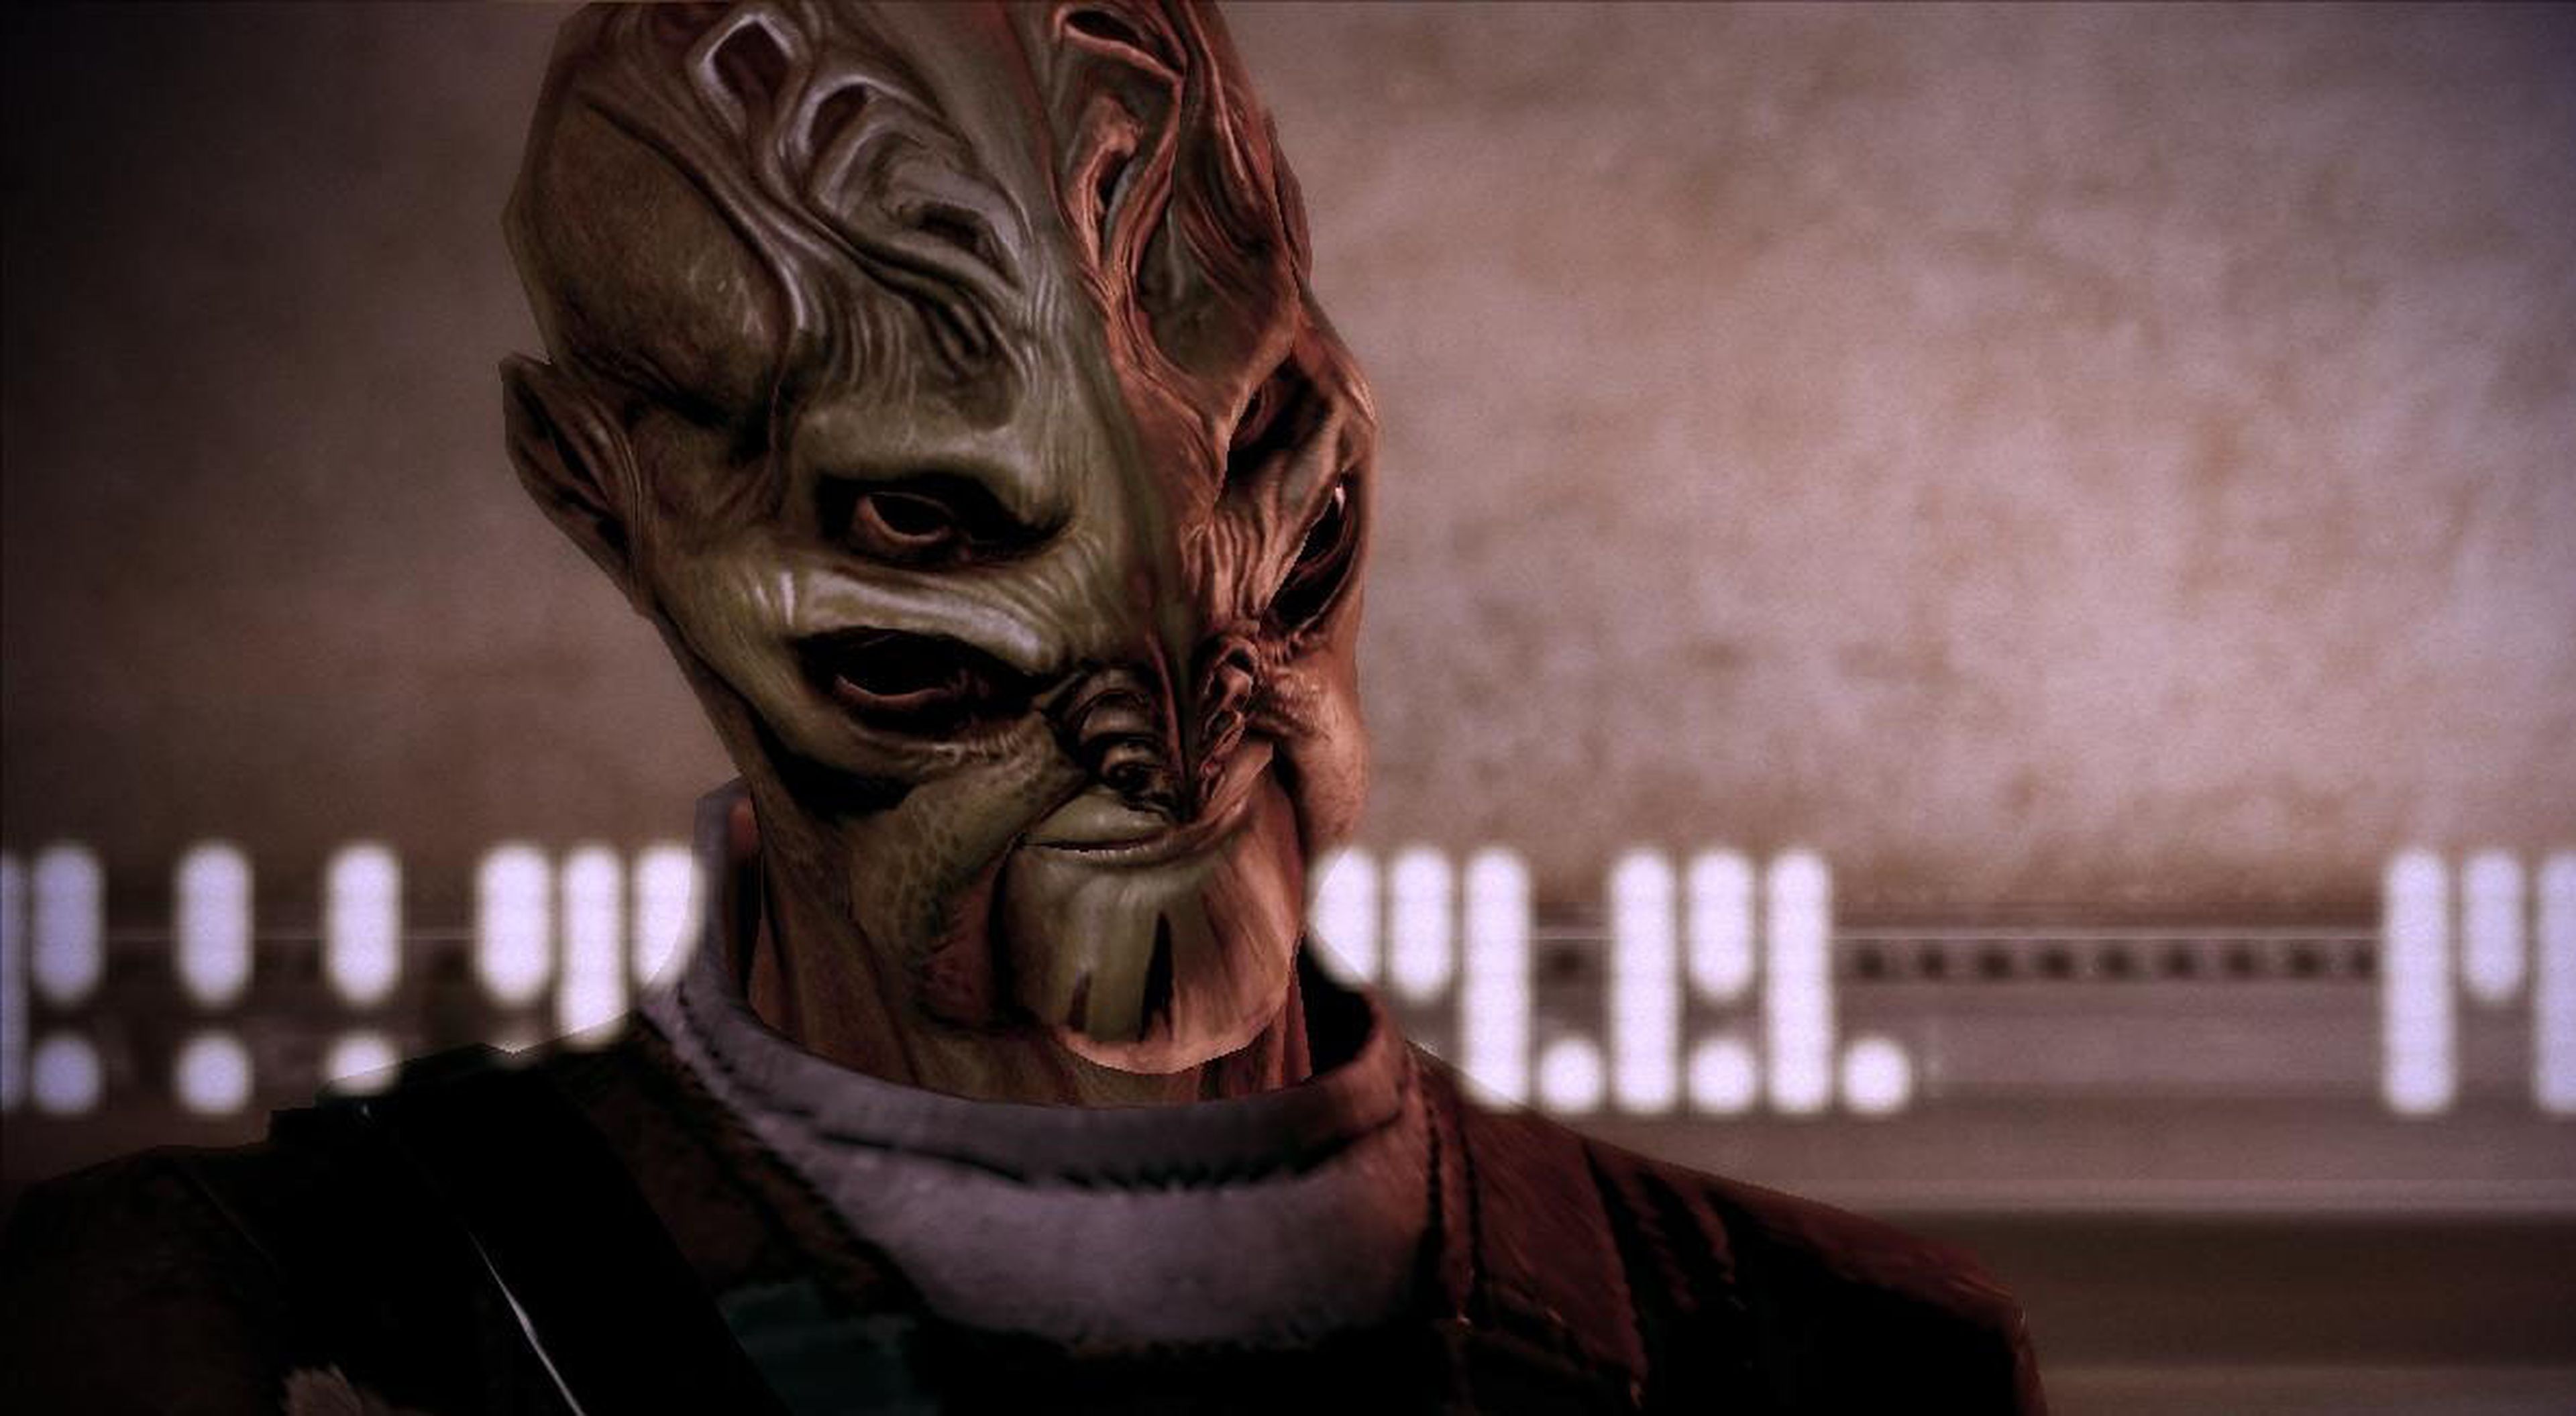 Universos de ficción: Mass Effect